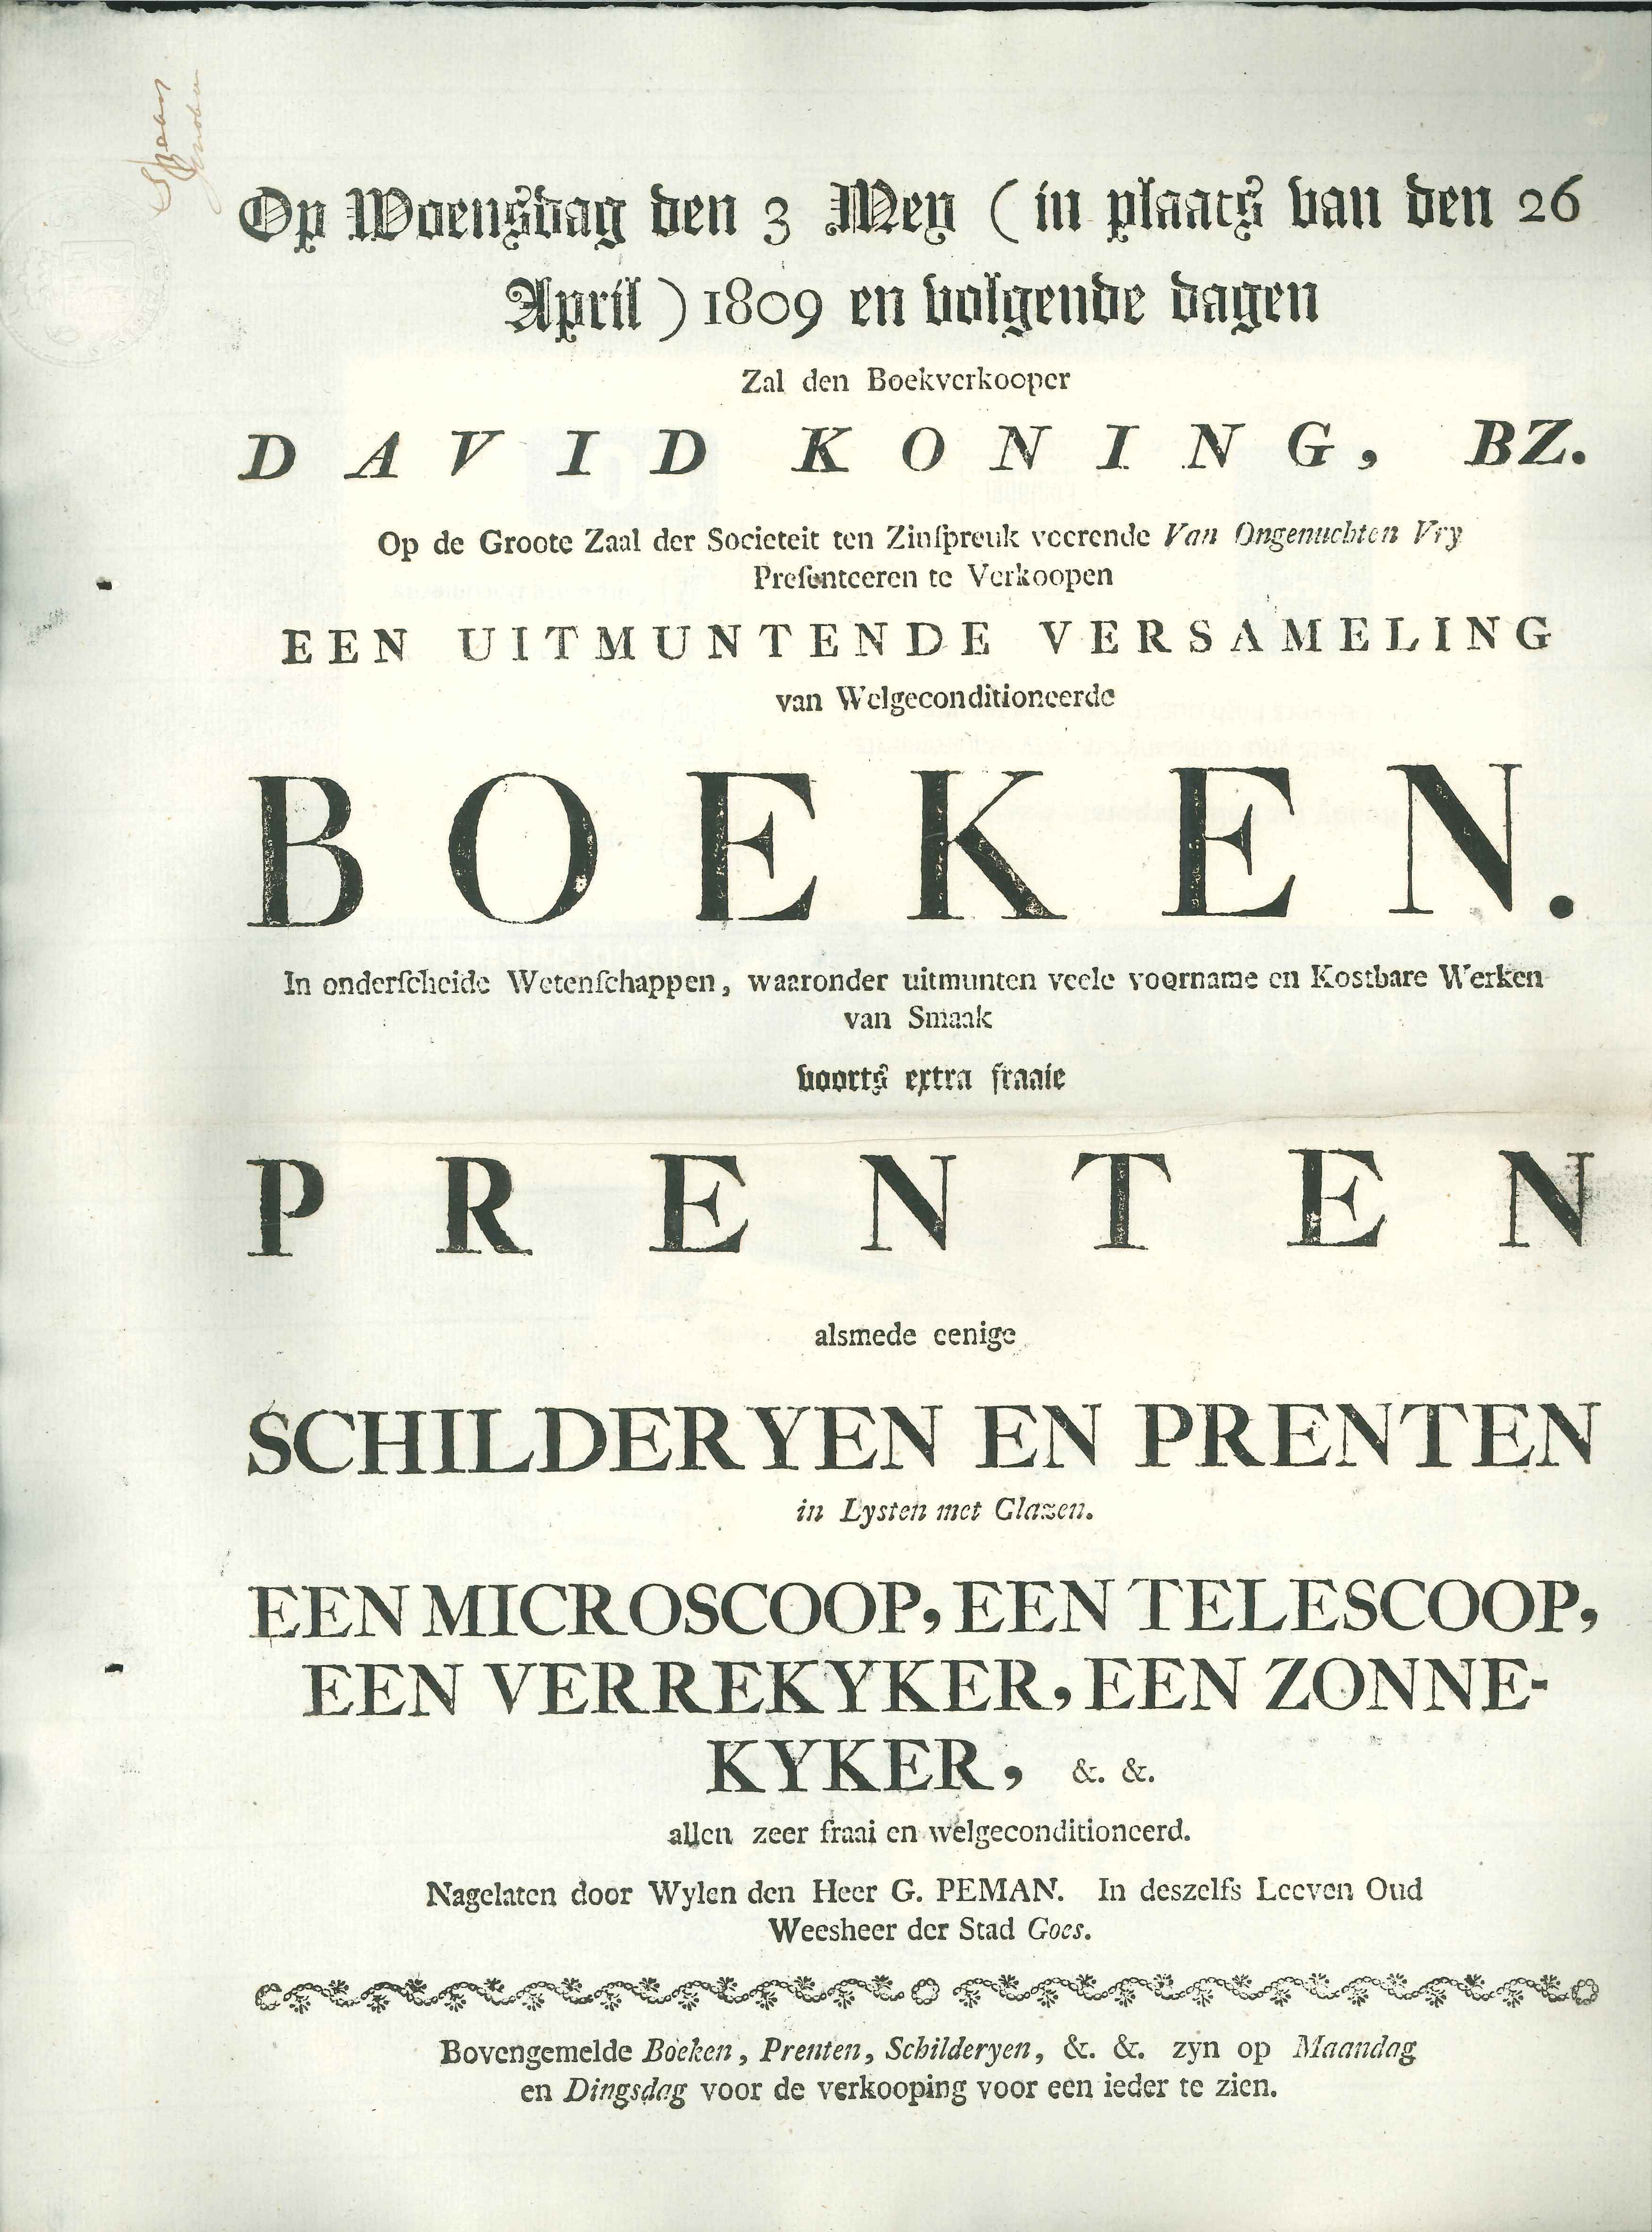 Veilingcatalogus van boeken en prenten van G. Peman, 1809.